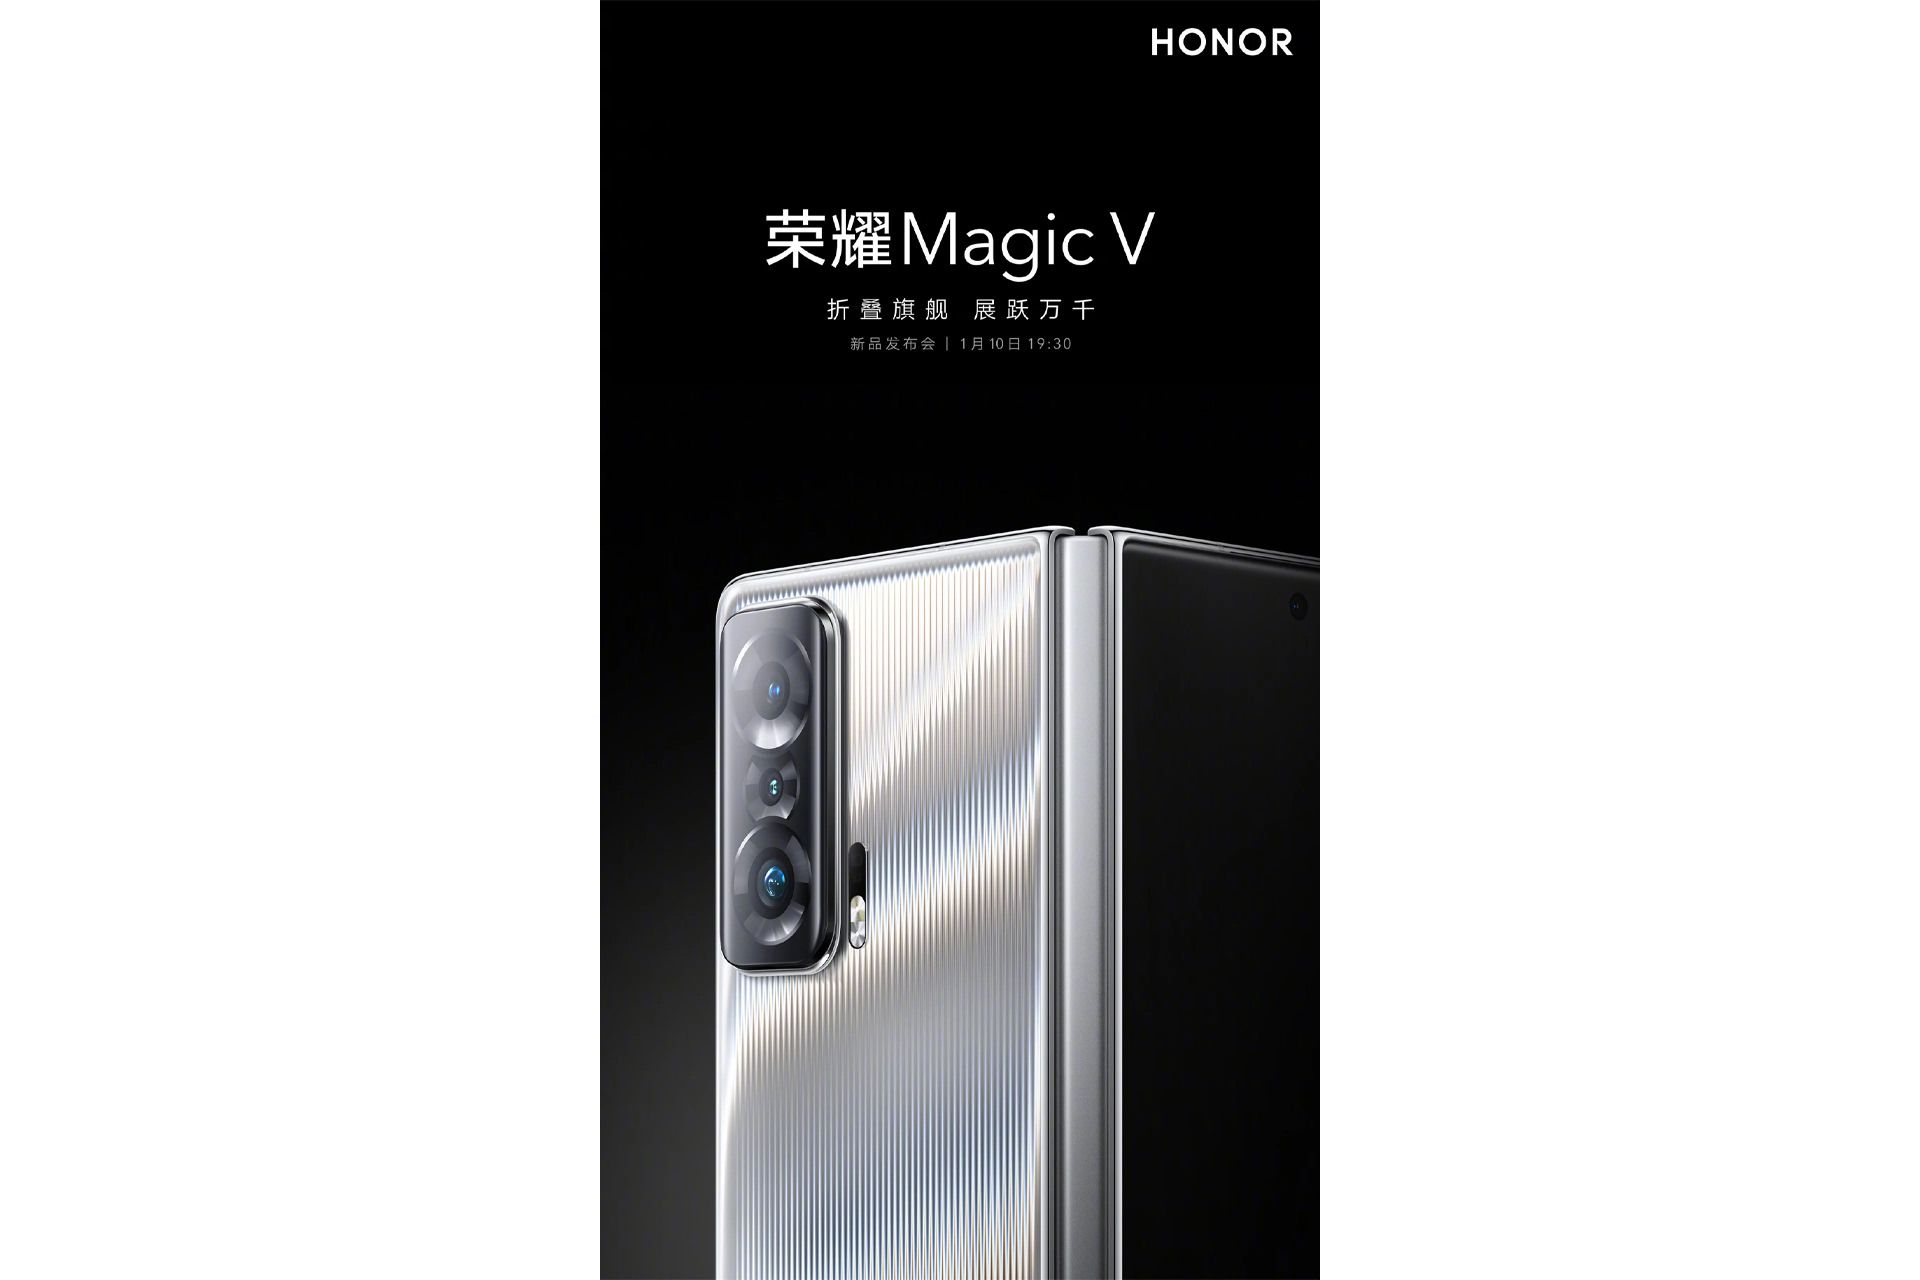 پوستر رسمی آنر مجیک وی / Honor Magic V نمای پشت گوشی تاشدنی